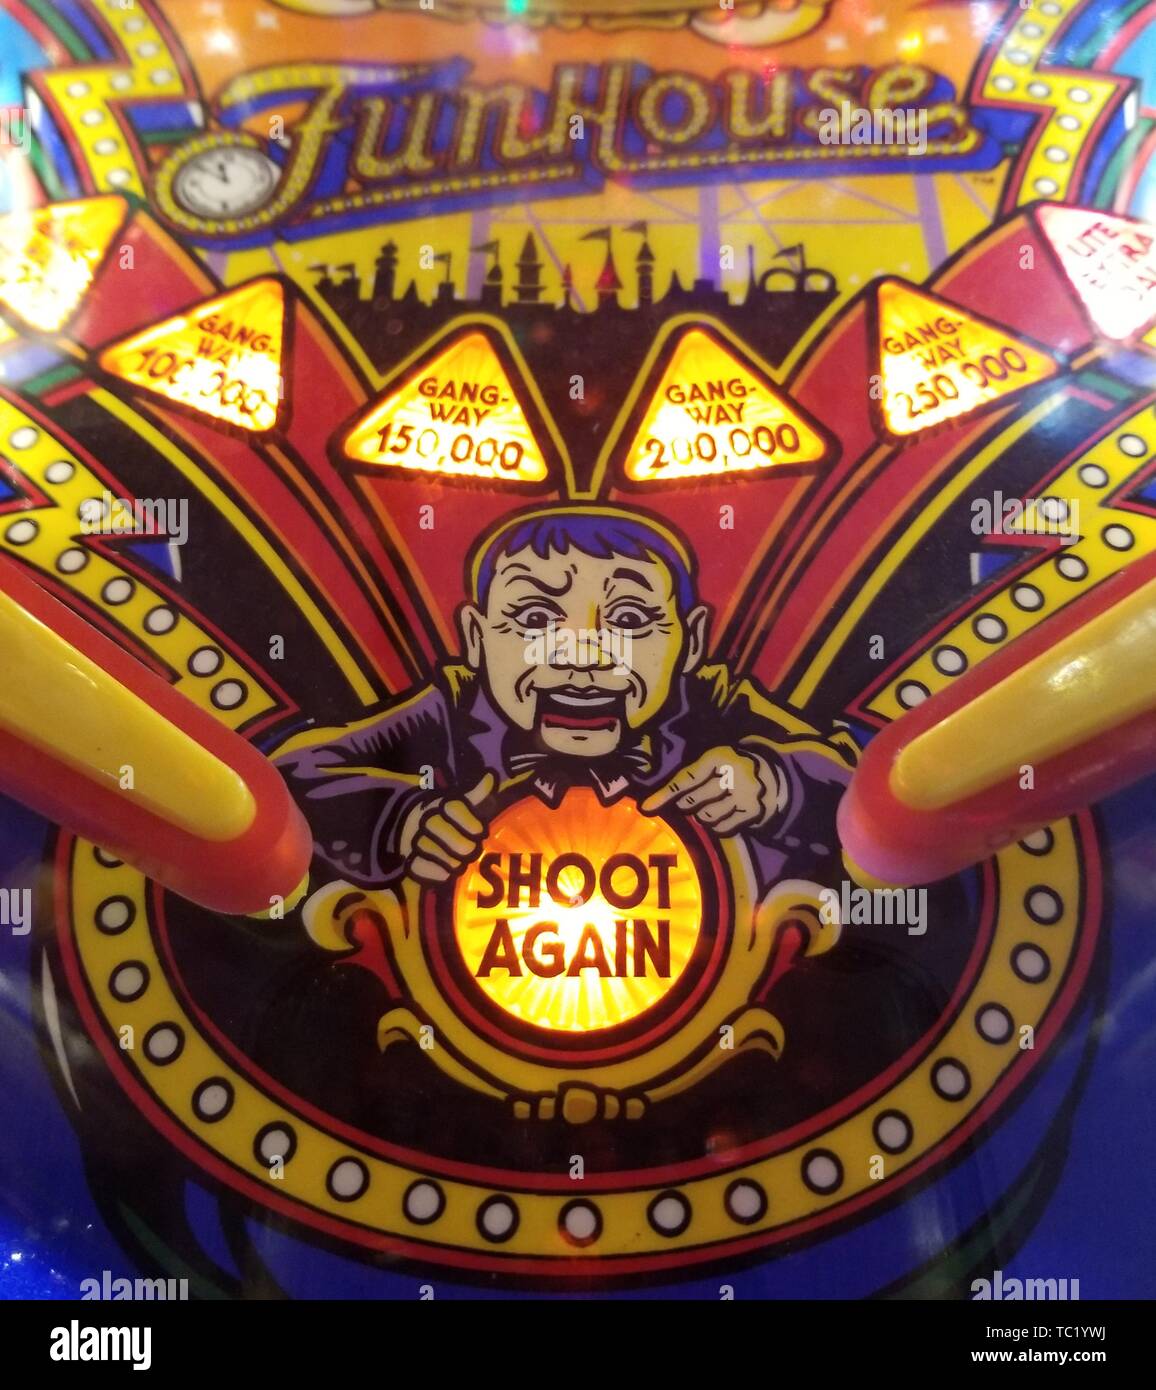 Detail Nahaufnahme der Vintage pinball playfield Artwork für Zirkus-themed "Funhouse"-Maschine mit bauchrednerpuppe Dummy- und "Shoot Again' Licht, 17. April 2019. () Stockfoto